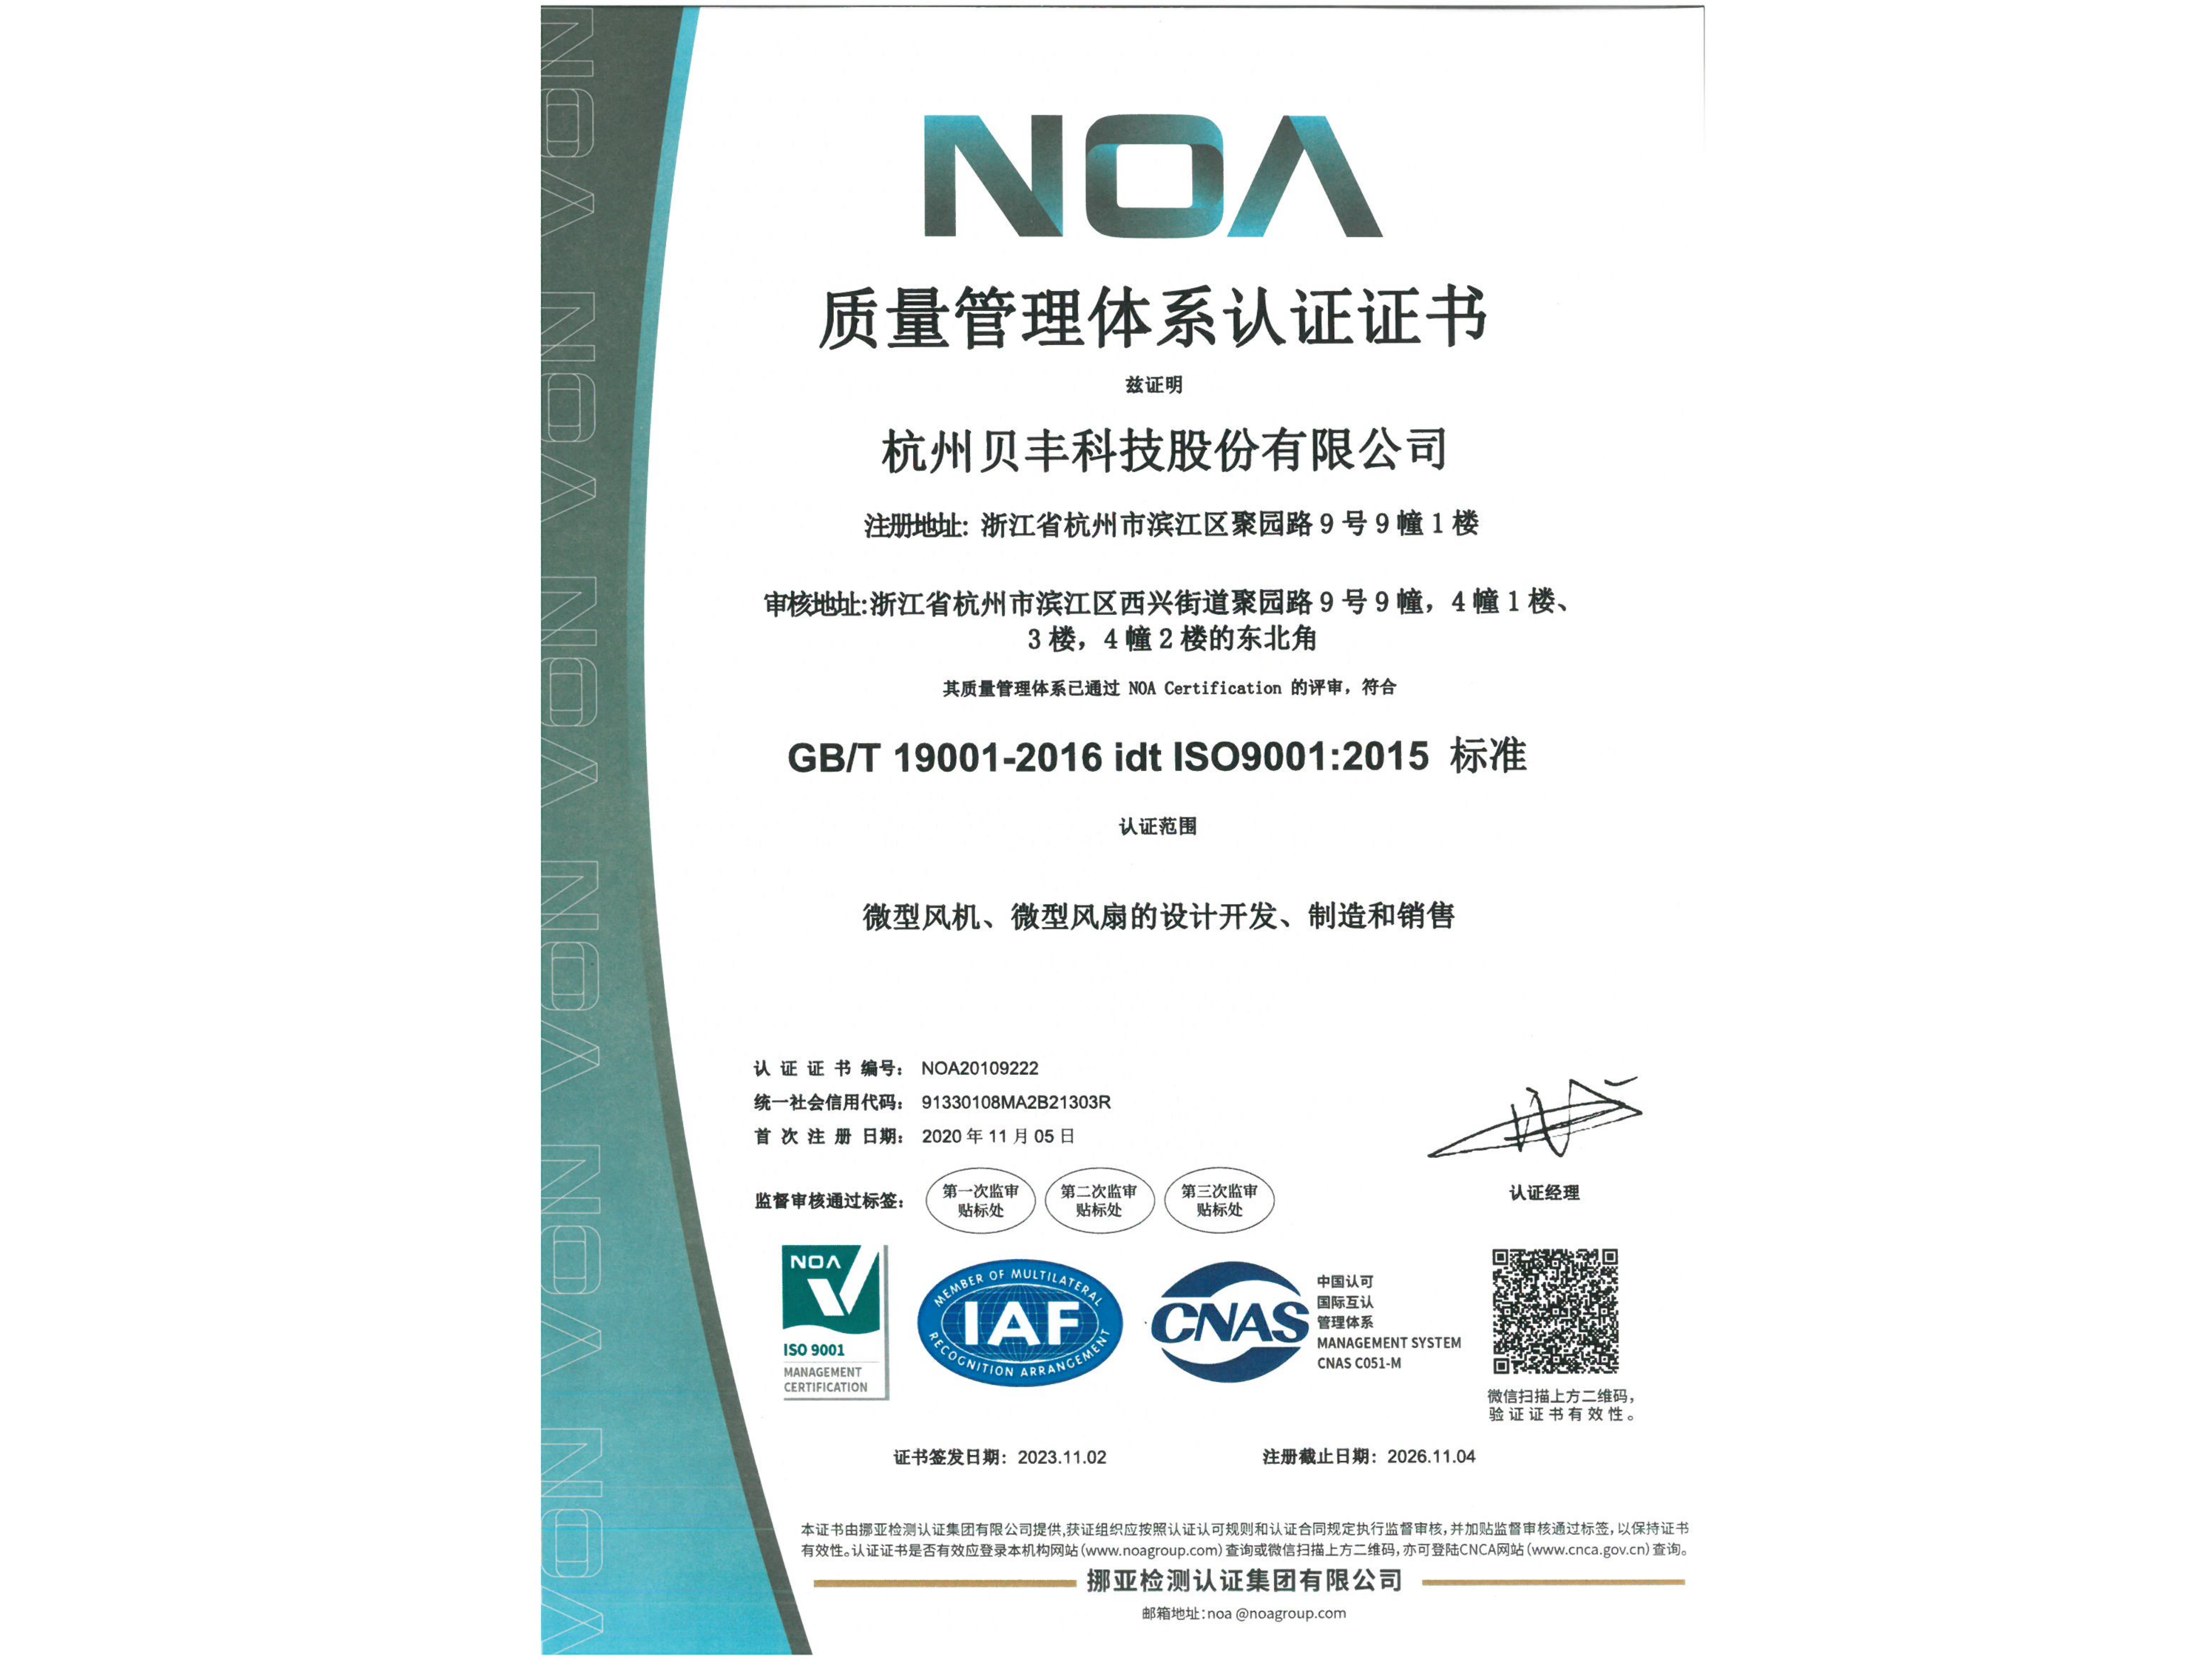 贝丰科技完成 ISO9001:2015 标准认证的年度审核